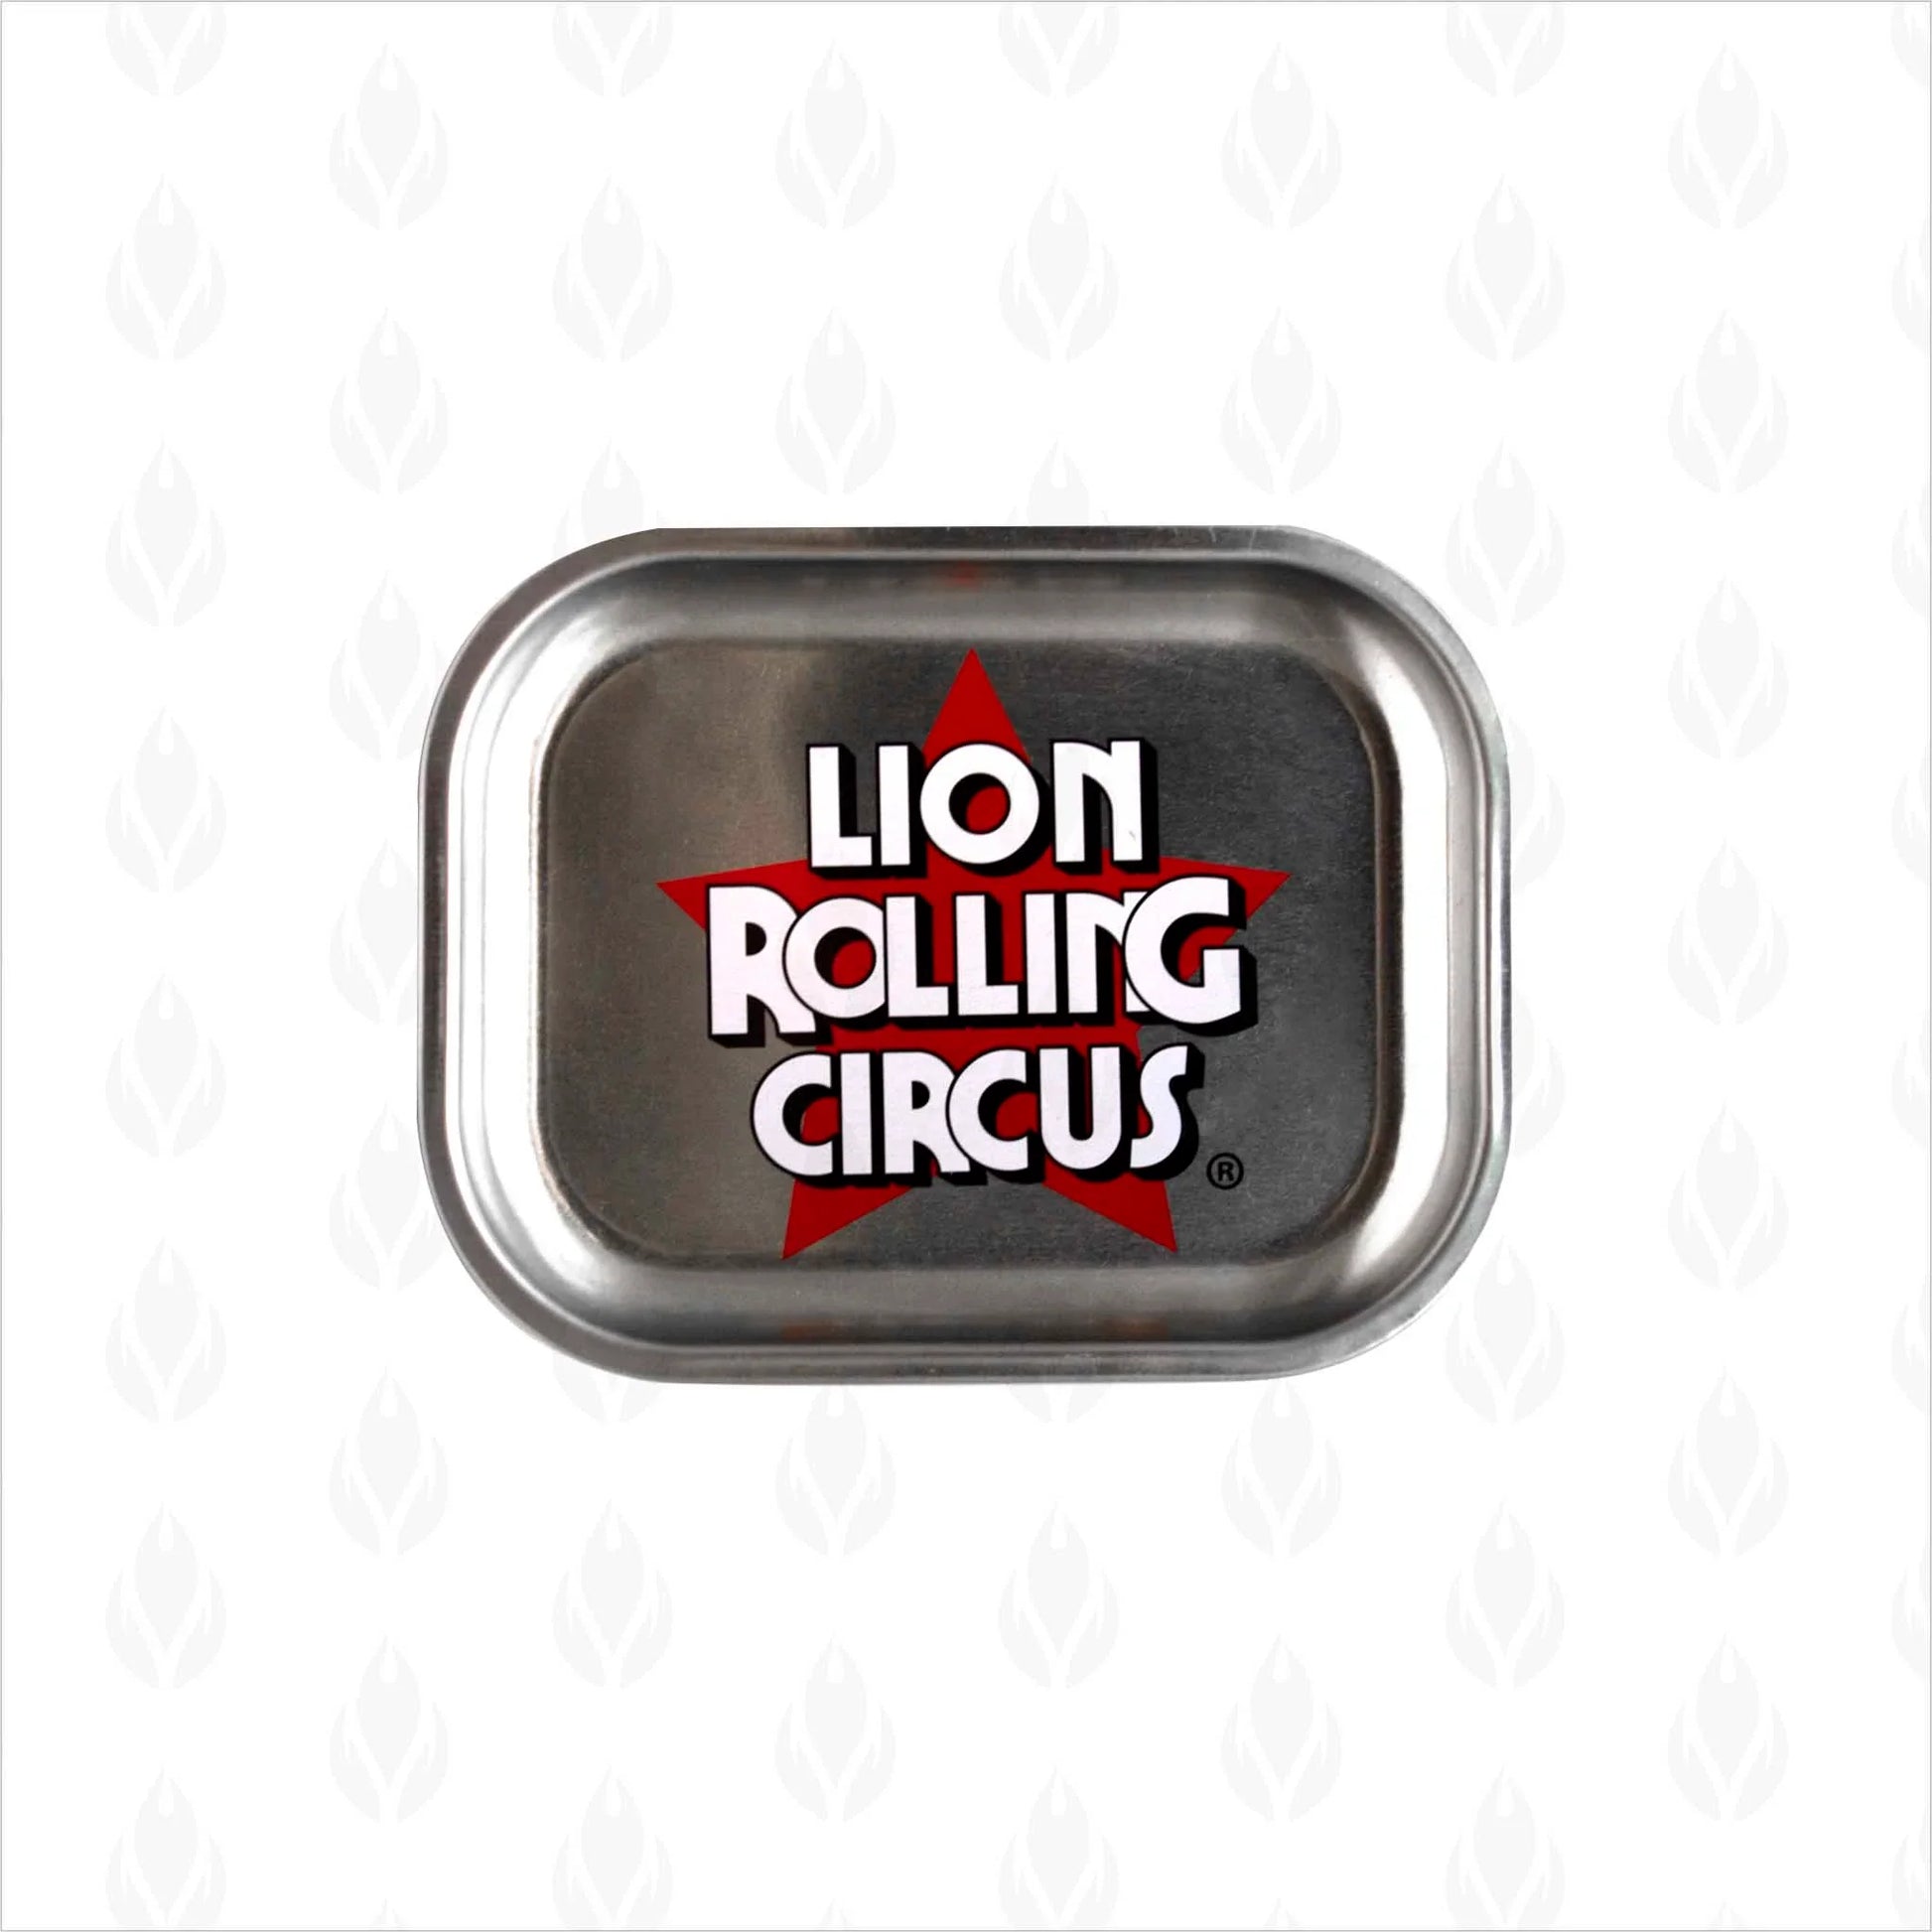 Charola metálica plateada con logo de Lion Rolling Circus